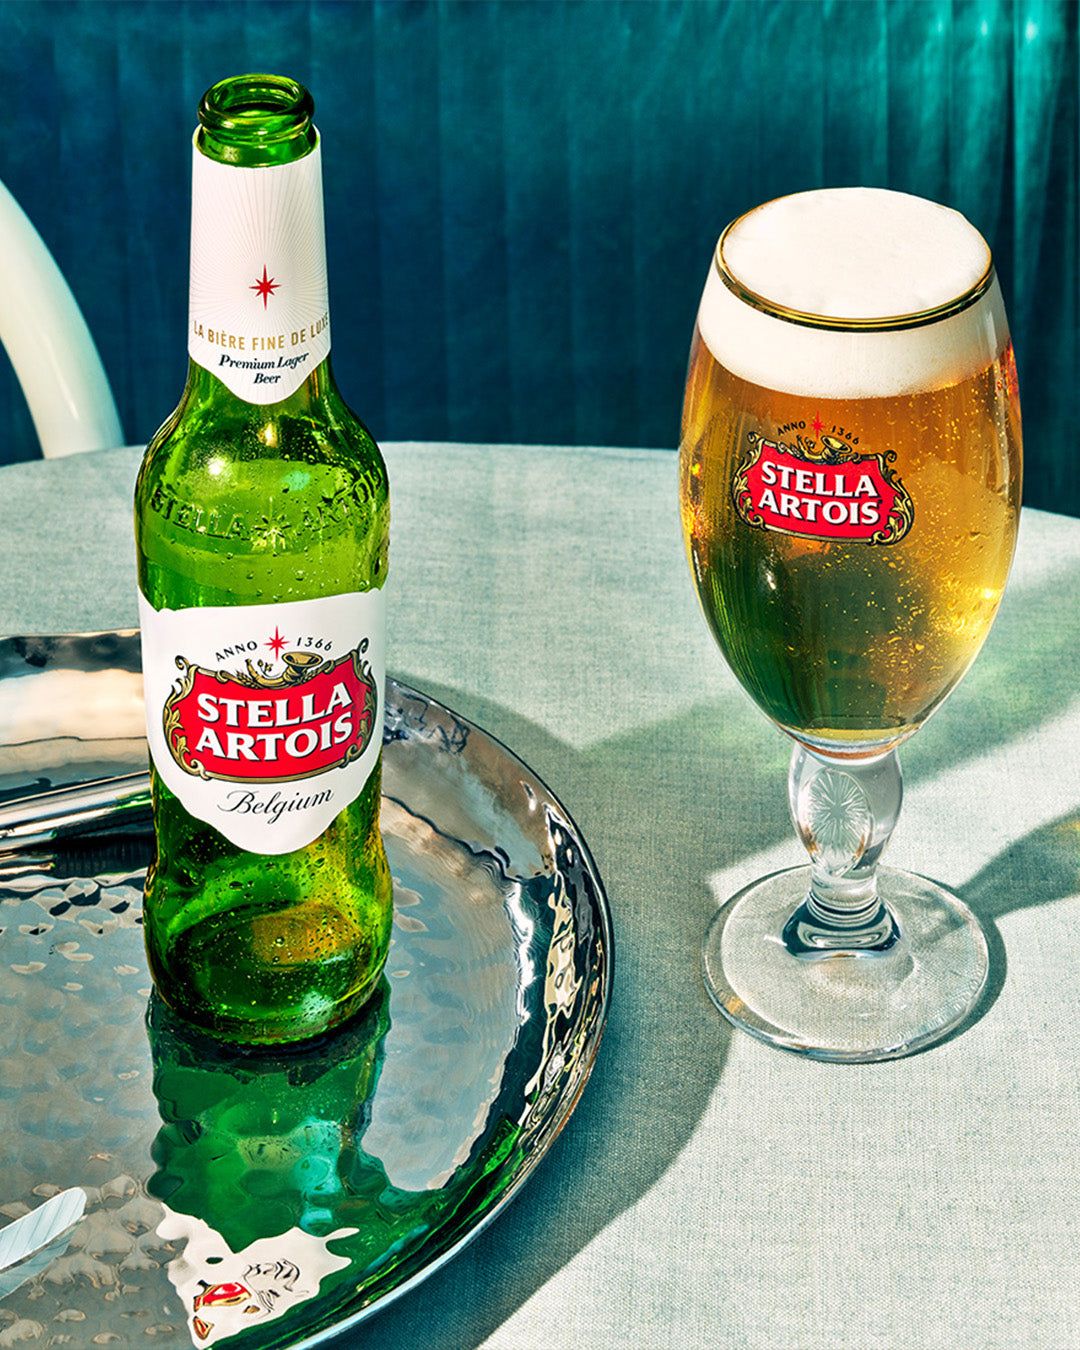 Stella Artois 4.8% 12 Pack 330ml Bottles - Thirsty Liquor Tauranga